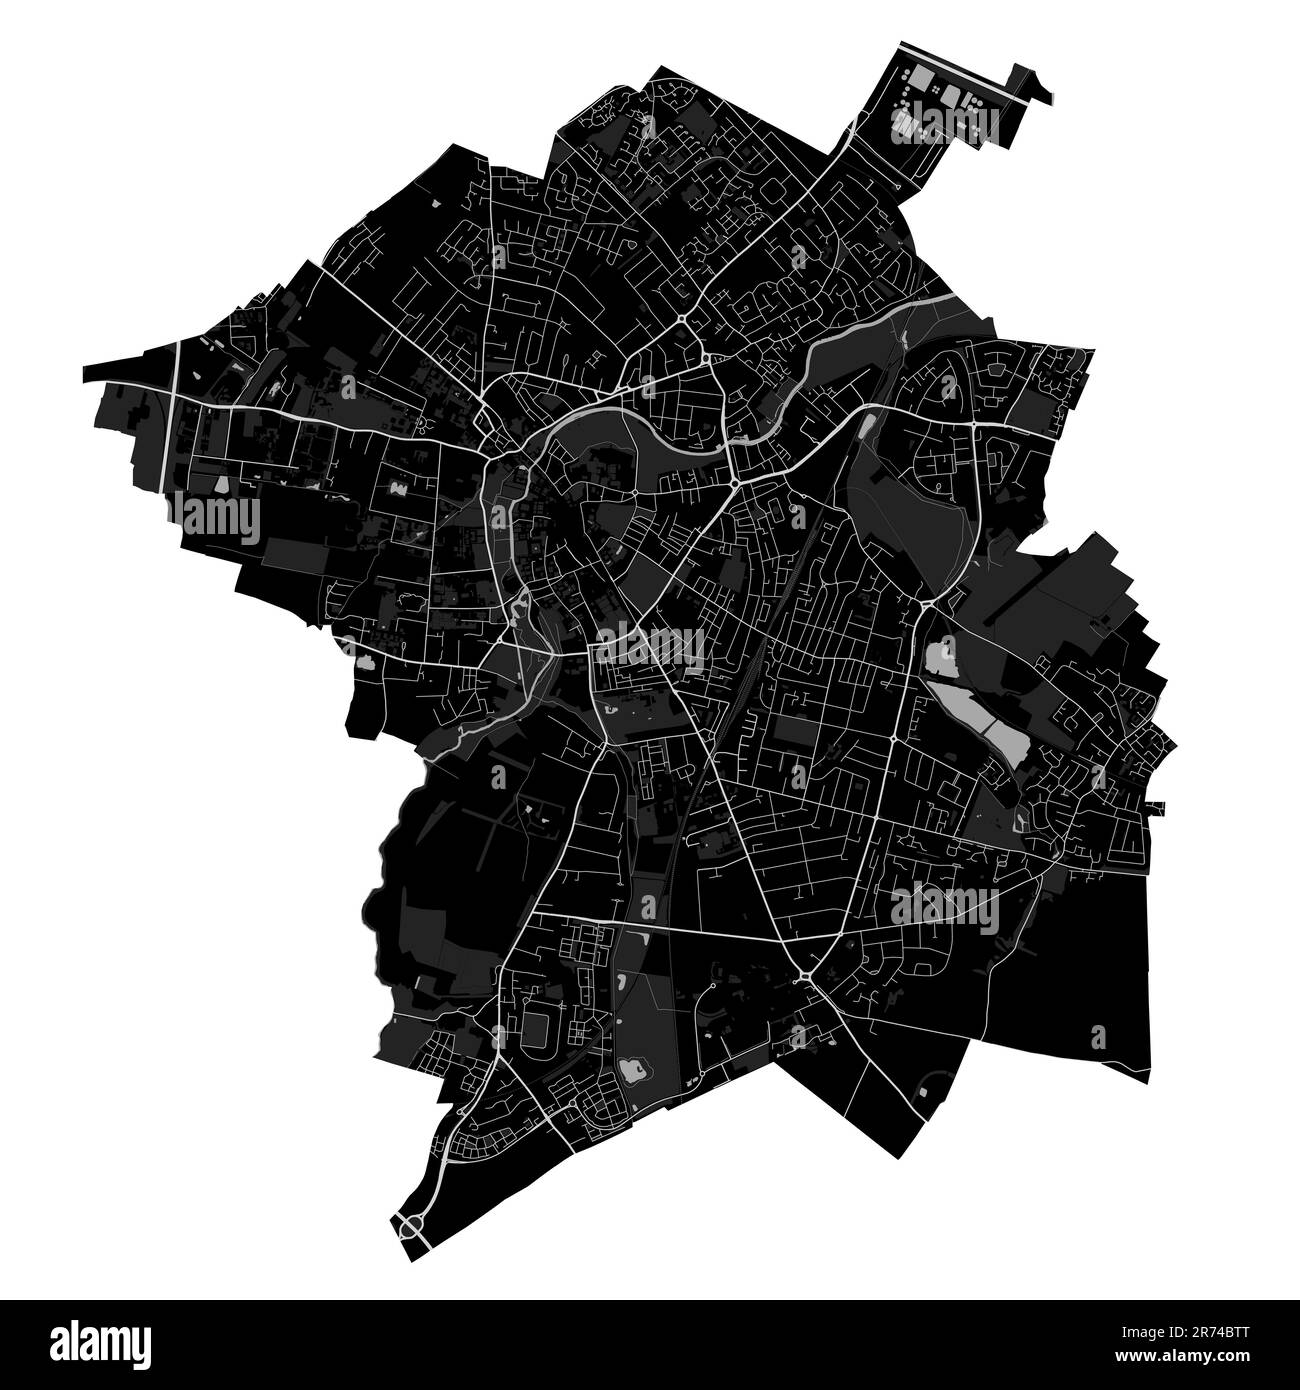 Mappa nera della città di Cambridge, Inghilterra, Regno Unito. Mappa amministrativa dettagliata con strade e ferrovie, parchi e fiumi. Confini della città. Illustrazione Vettoriale